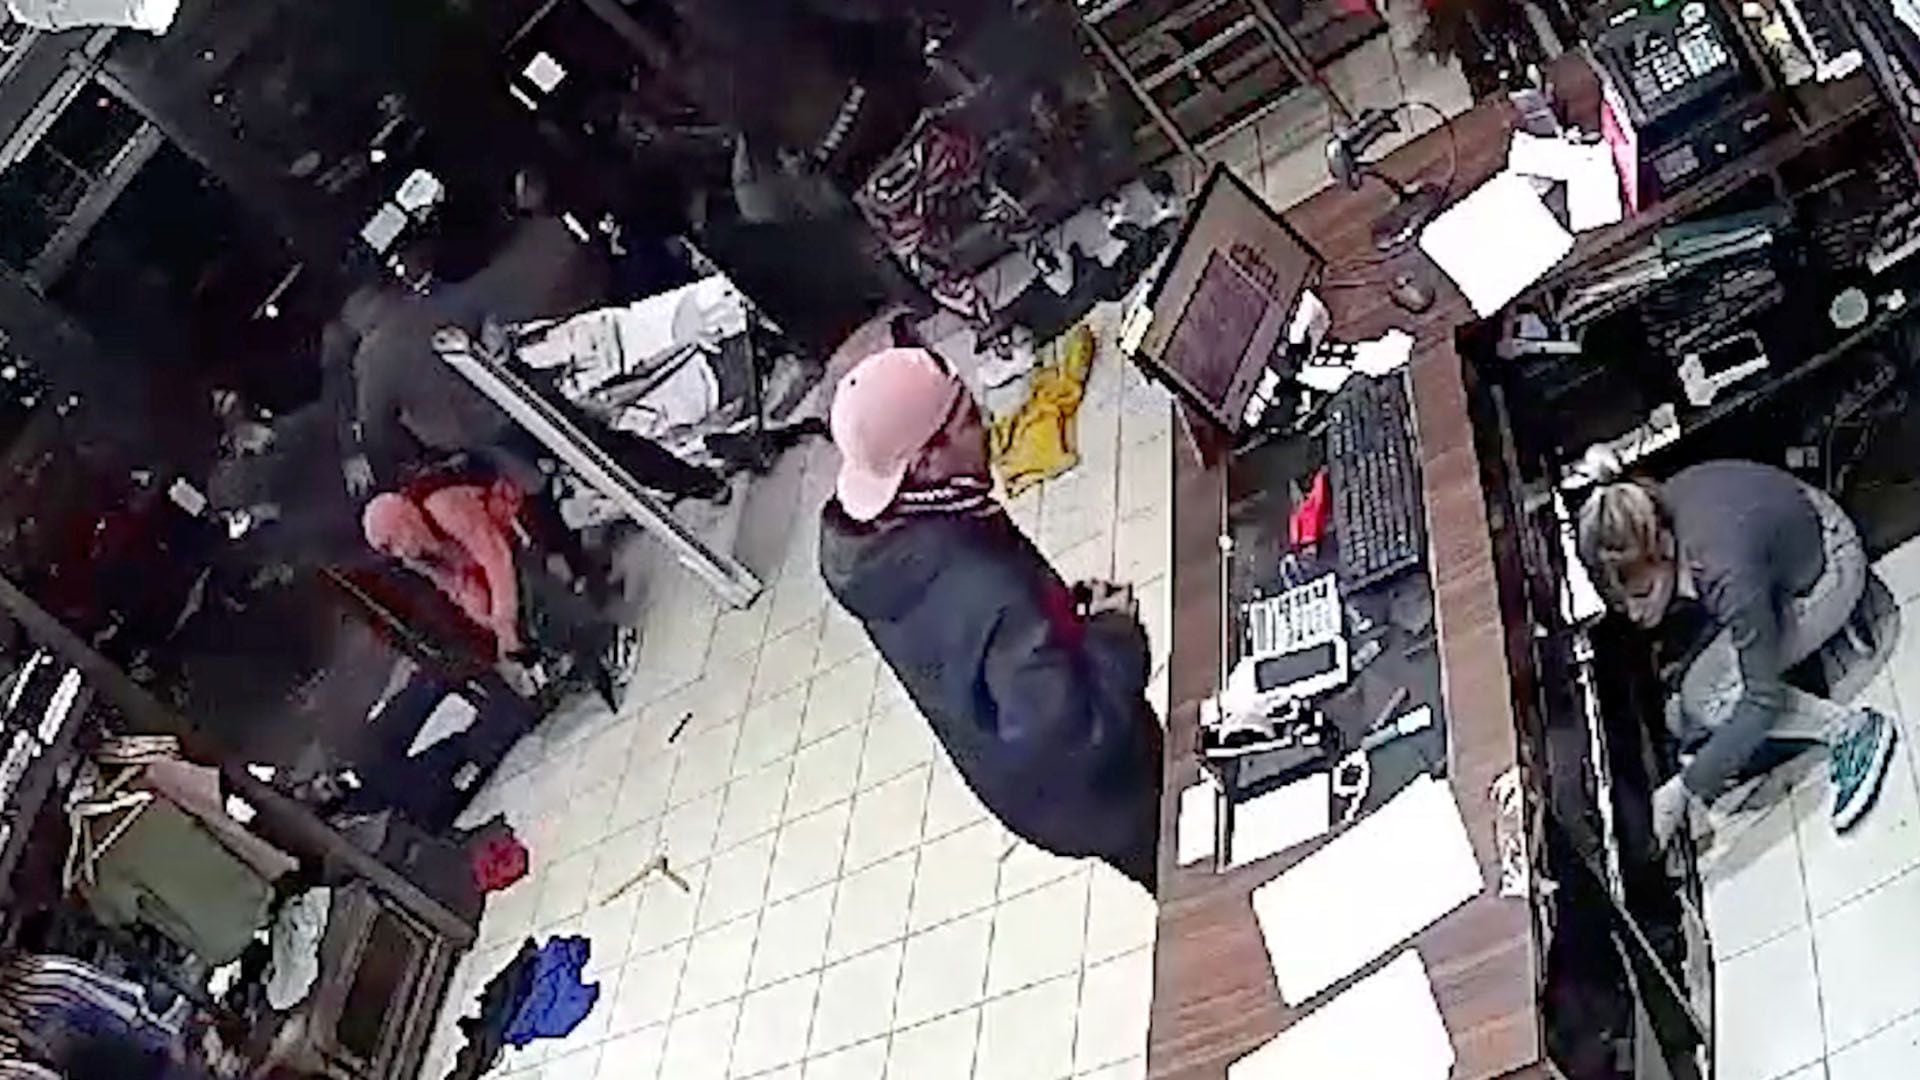 Una turba ingresó violentamente a un local comercial en el centro de Moreno 